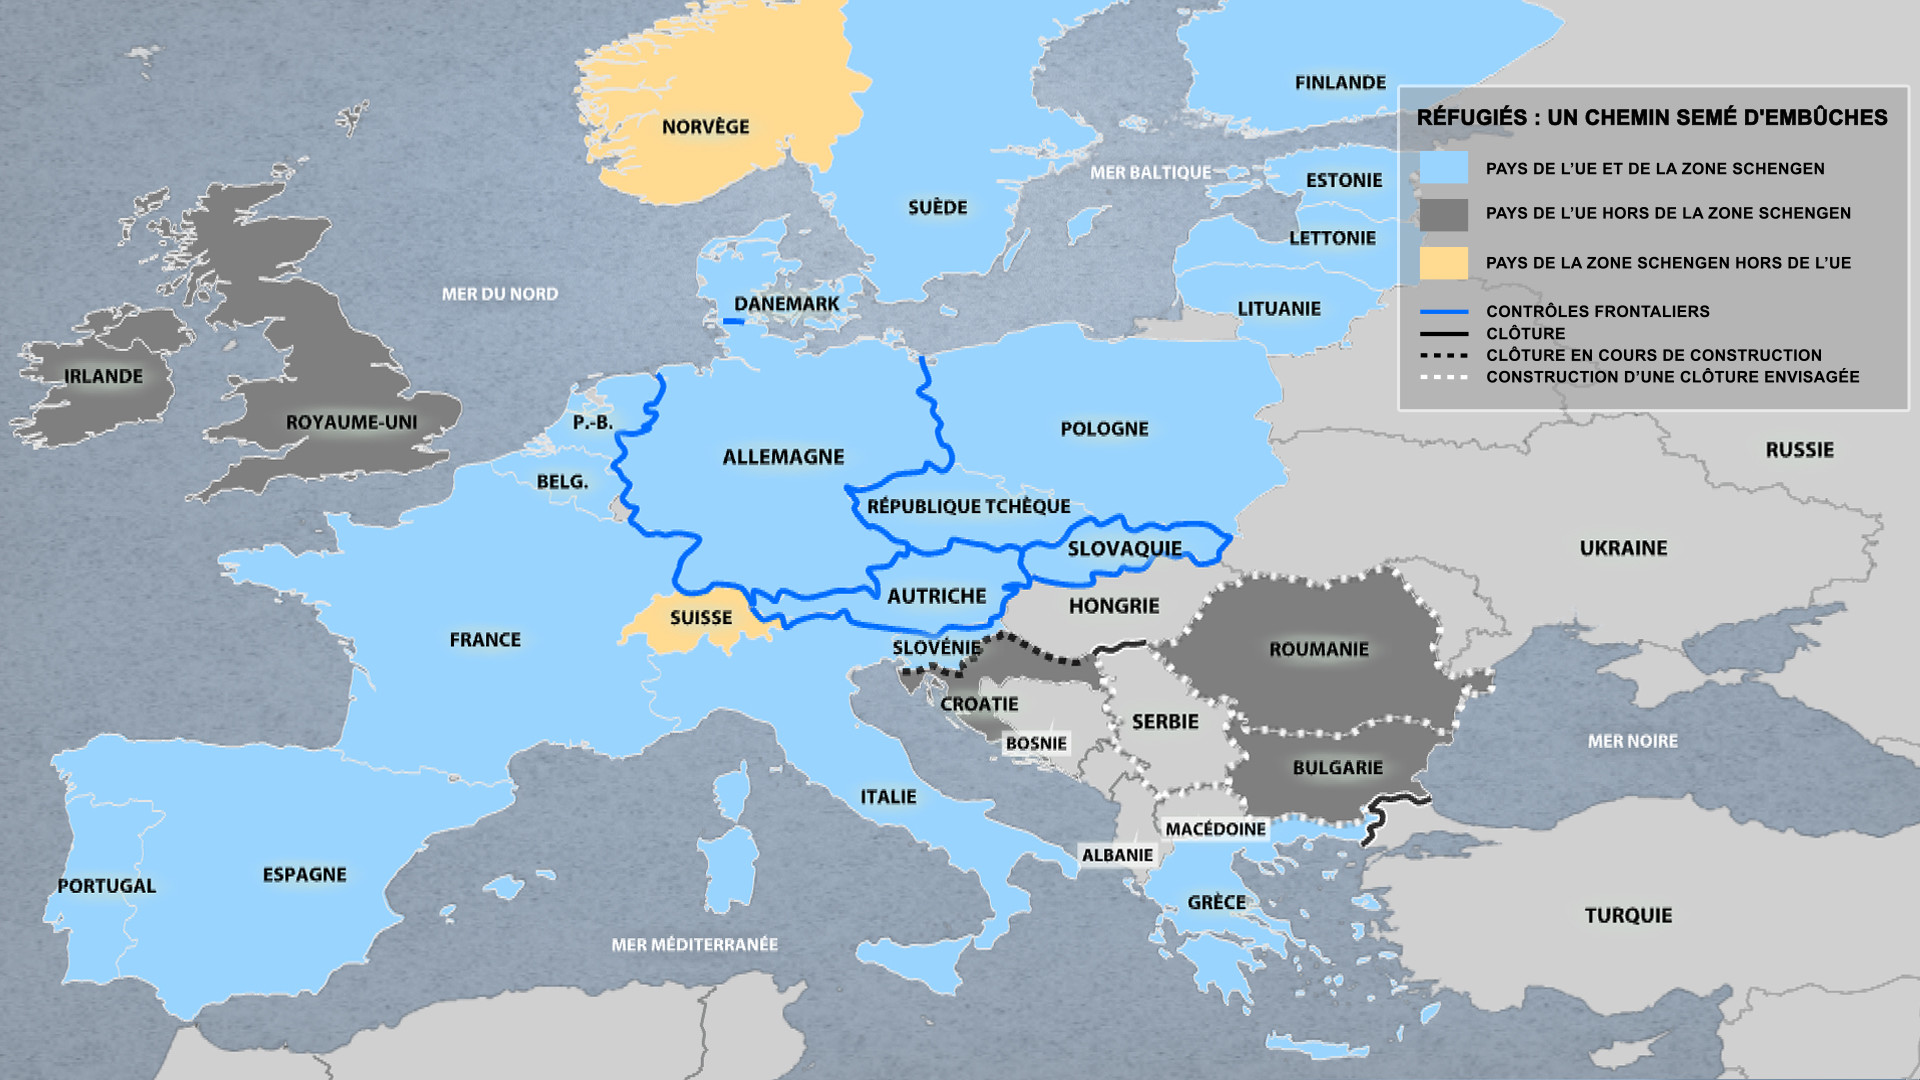 Crise migratoire : une carte montre comment l'Europe devient une forteresse anti-réfugiés